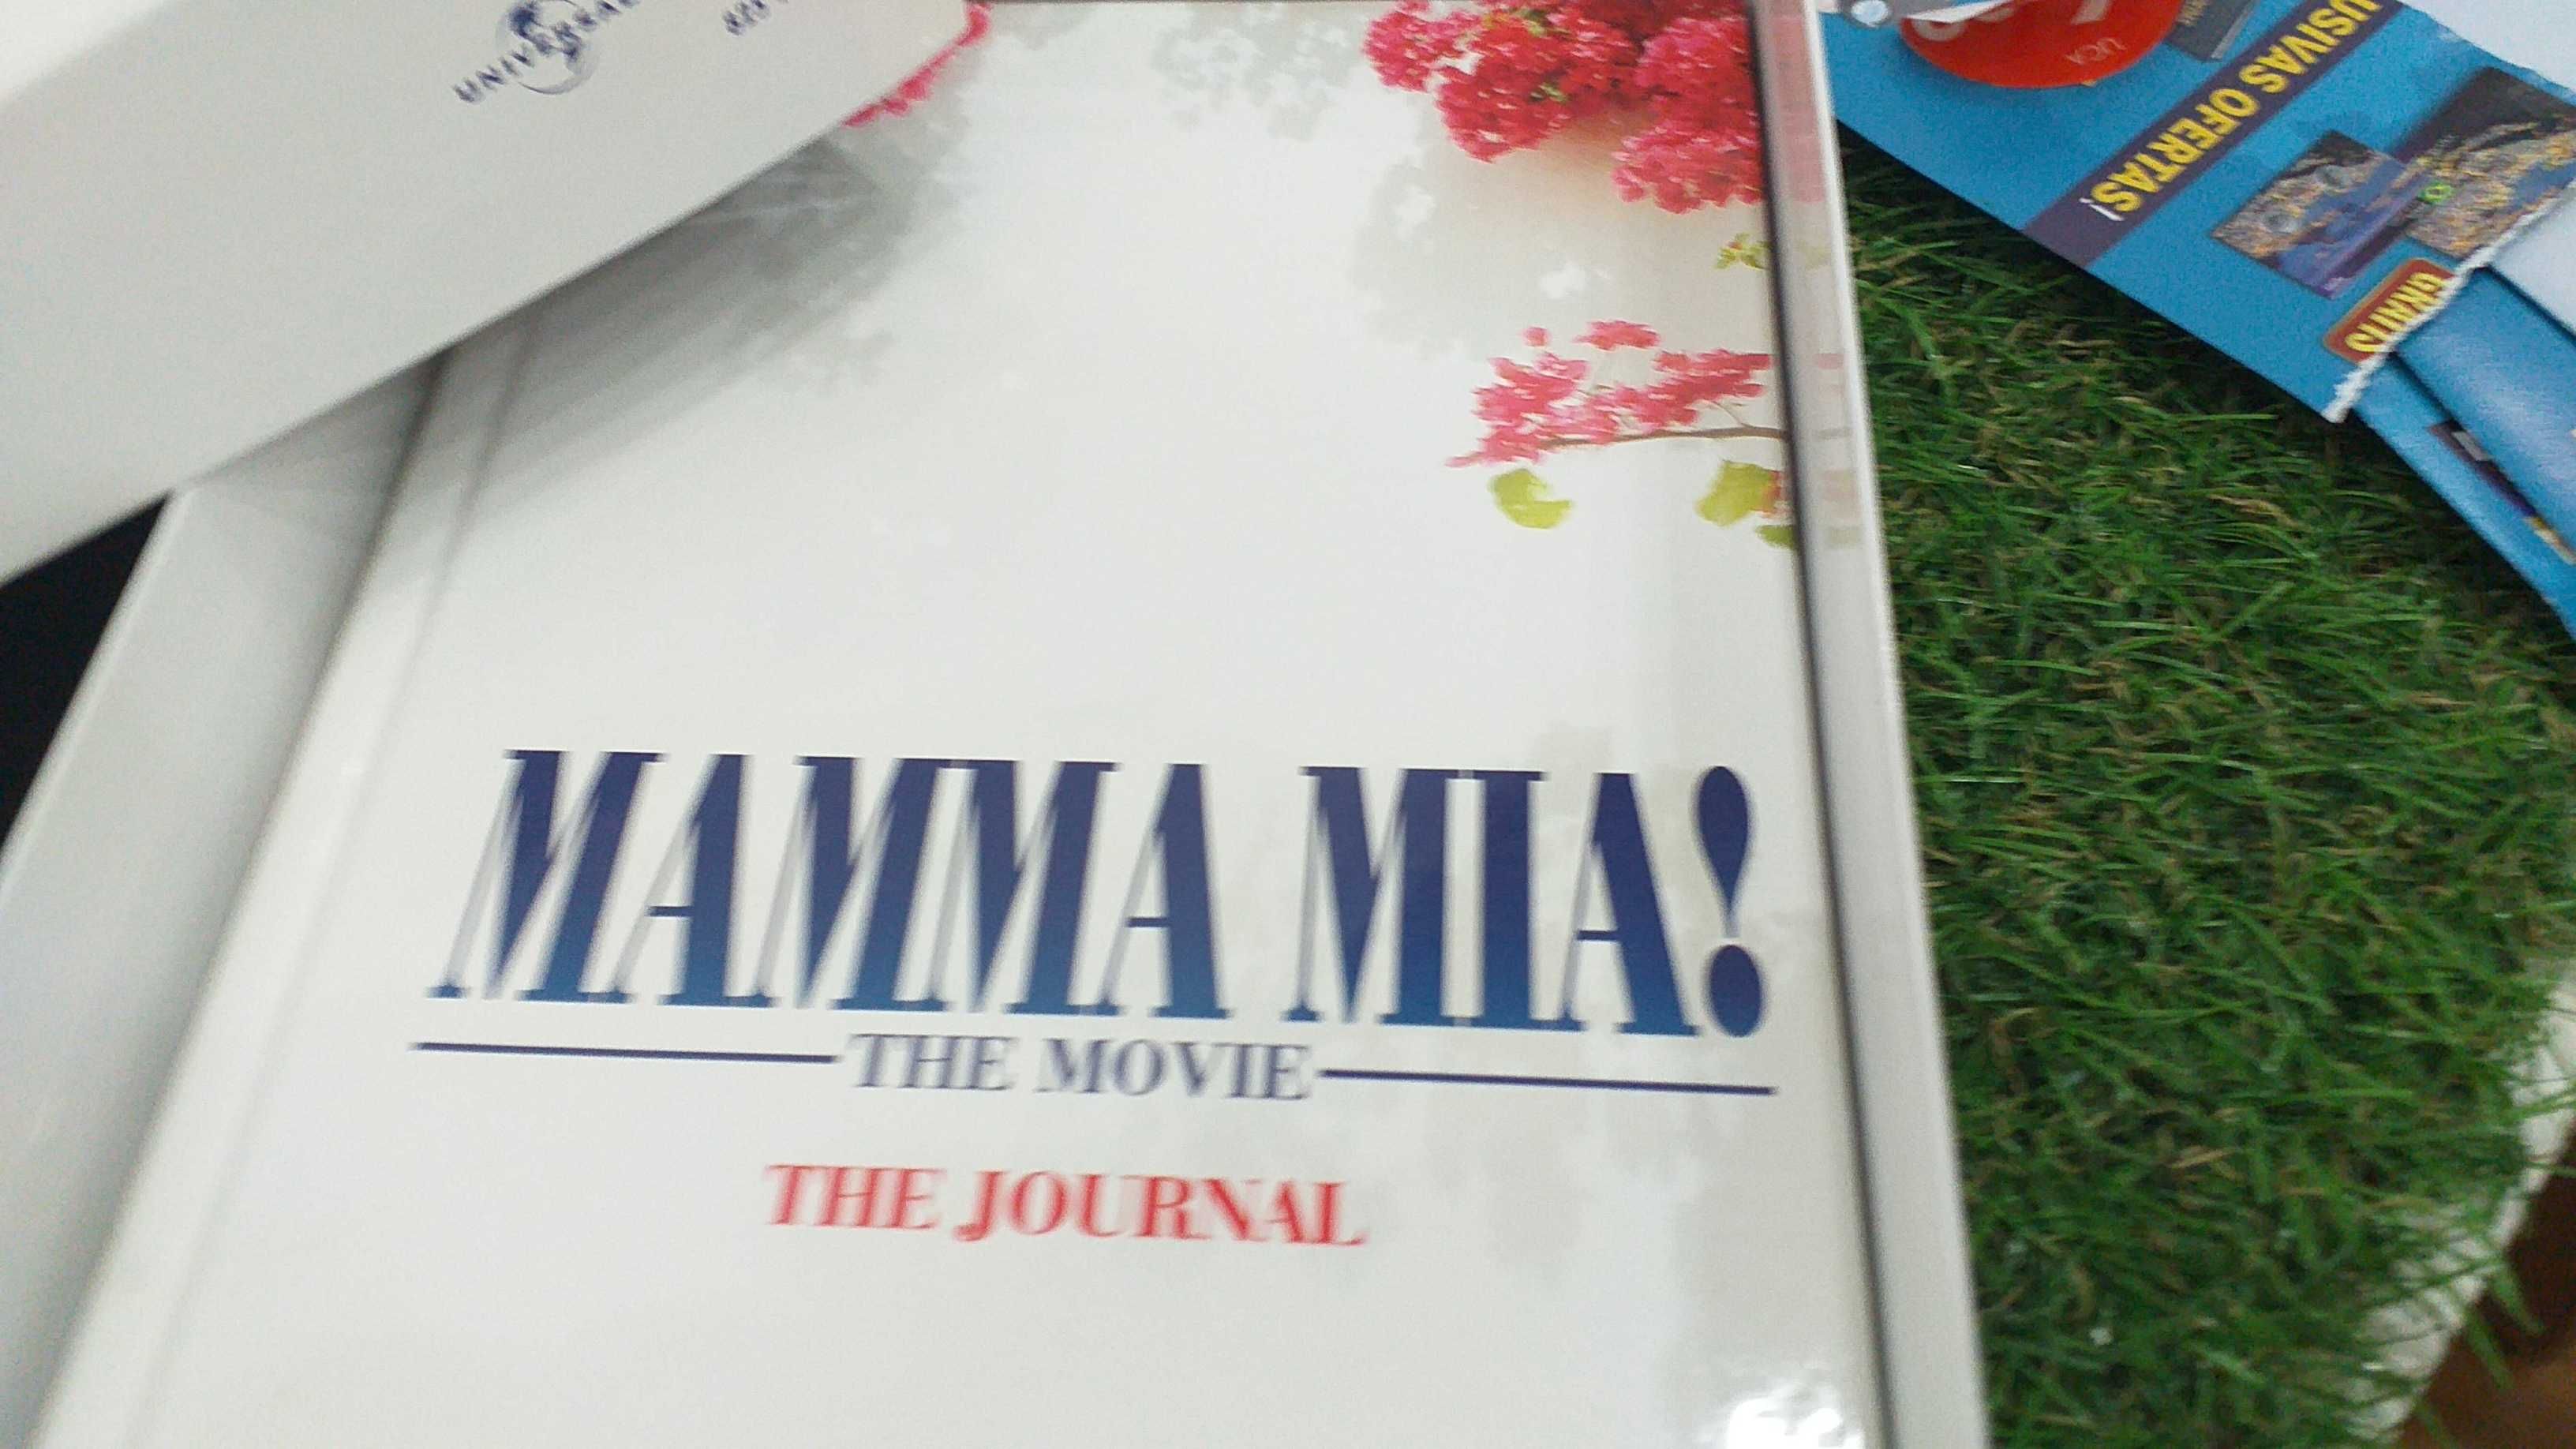 DVD MAMMA MIA filme + livro The journal em caixa especial+bilhetes